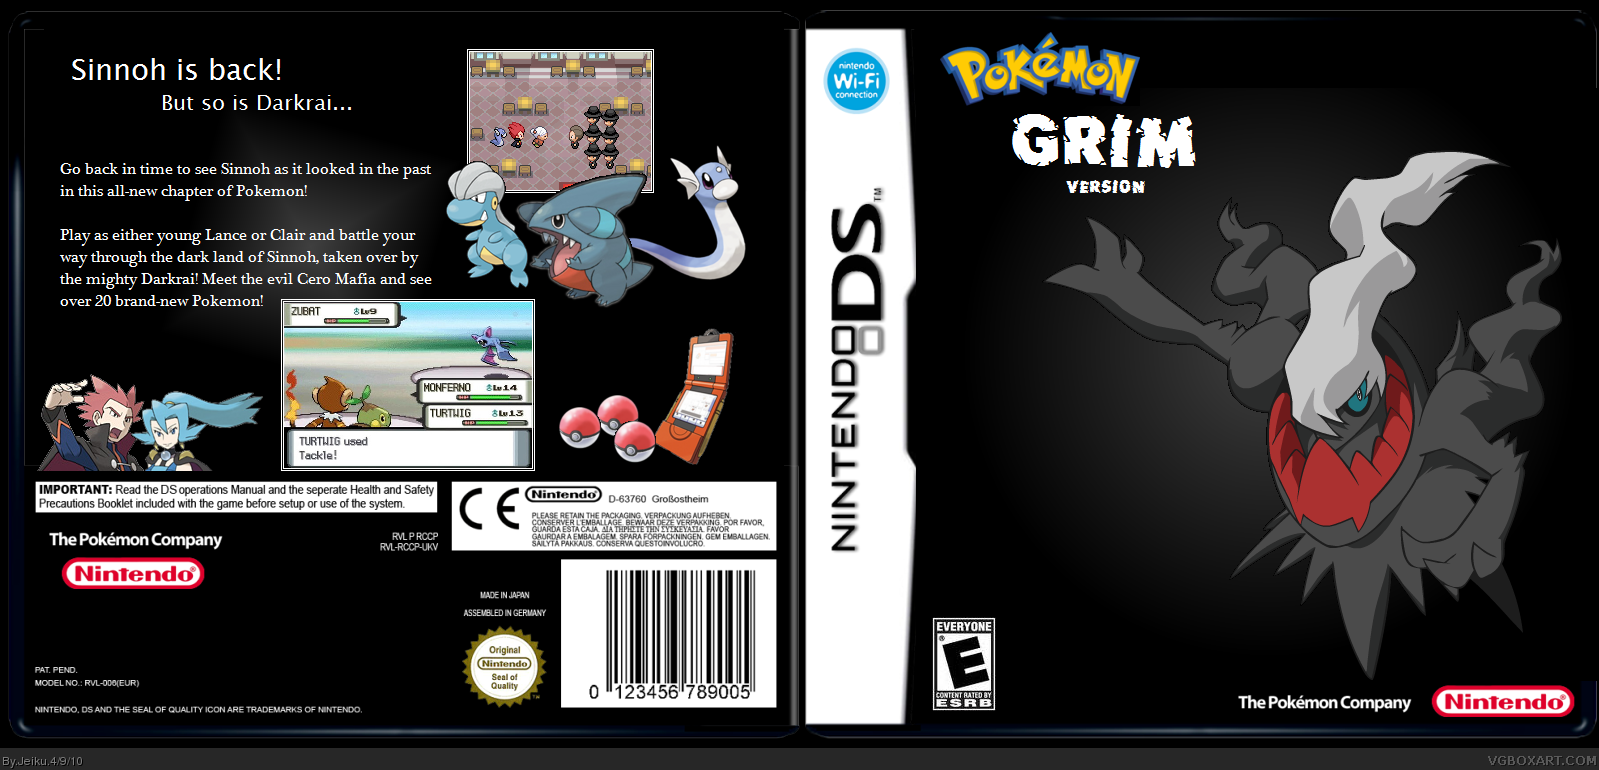 Pokemon Grim Version box cover